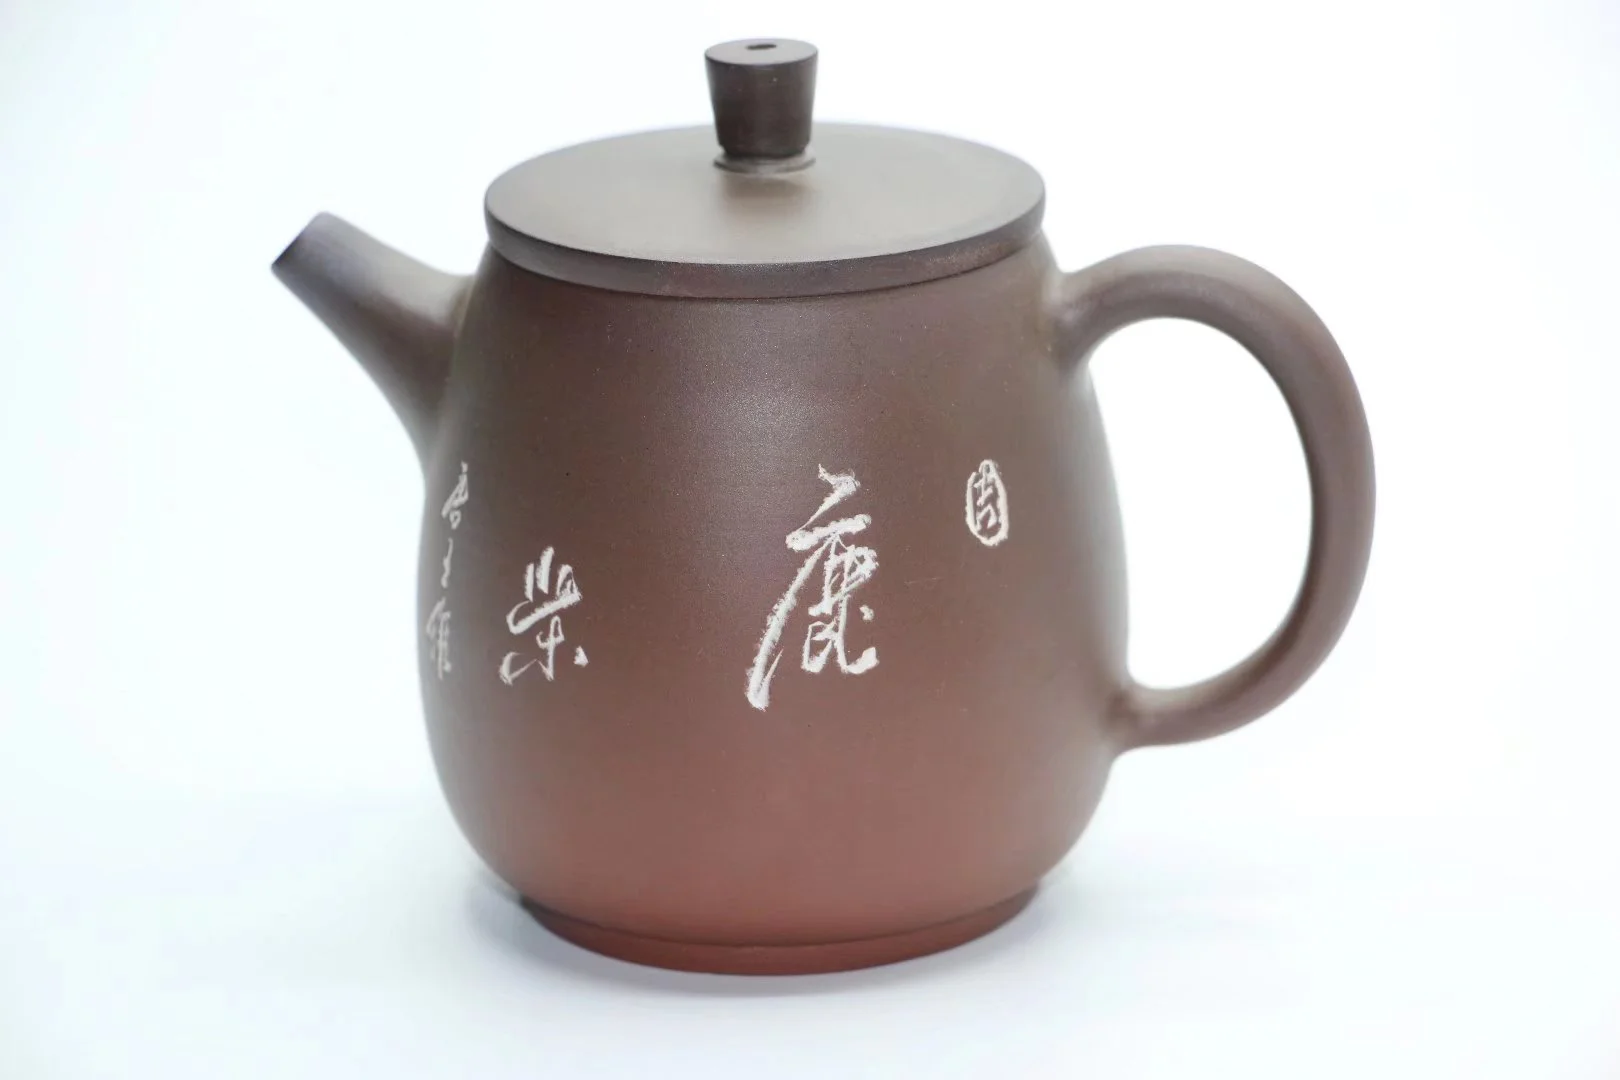 

Qin Zhou Ceramic Qinzhou Ni Xing Tao(No Yixing clay teapot) GAO TONG JIN for puer oolong black tea about 200ml